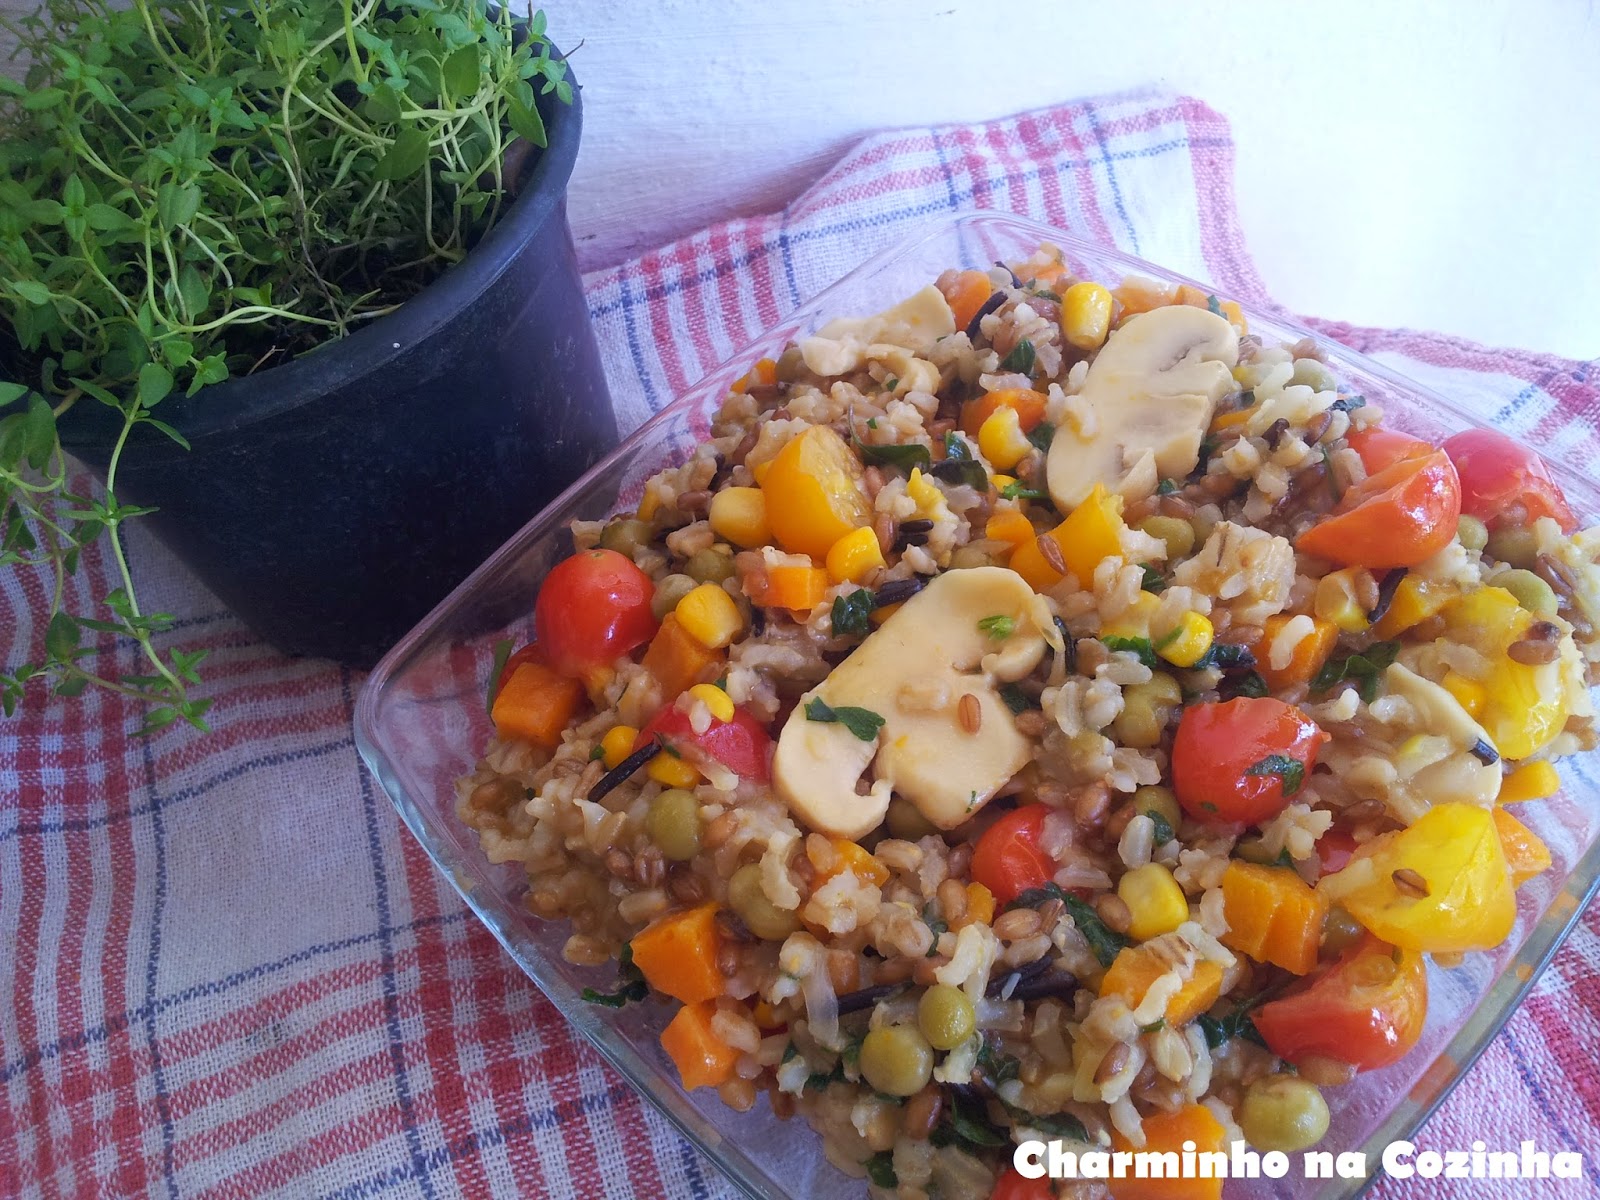 Salada  primavera com arroz 7 cereais